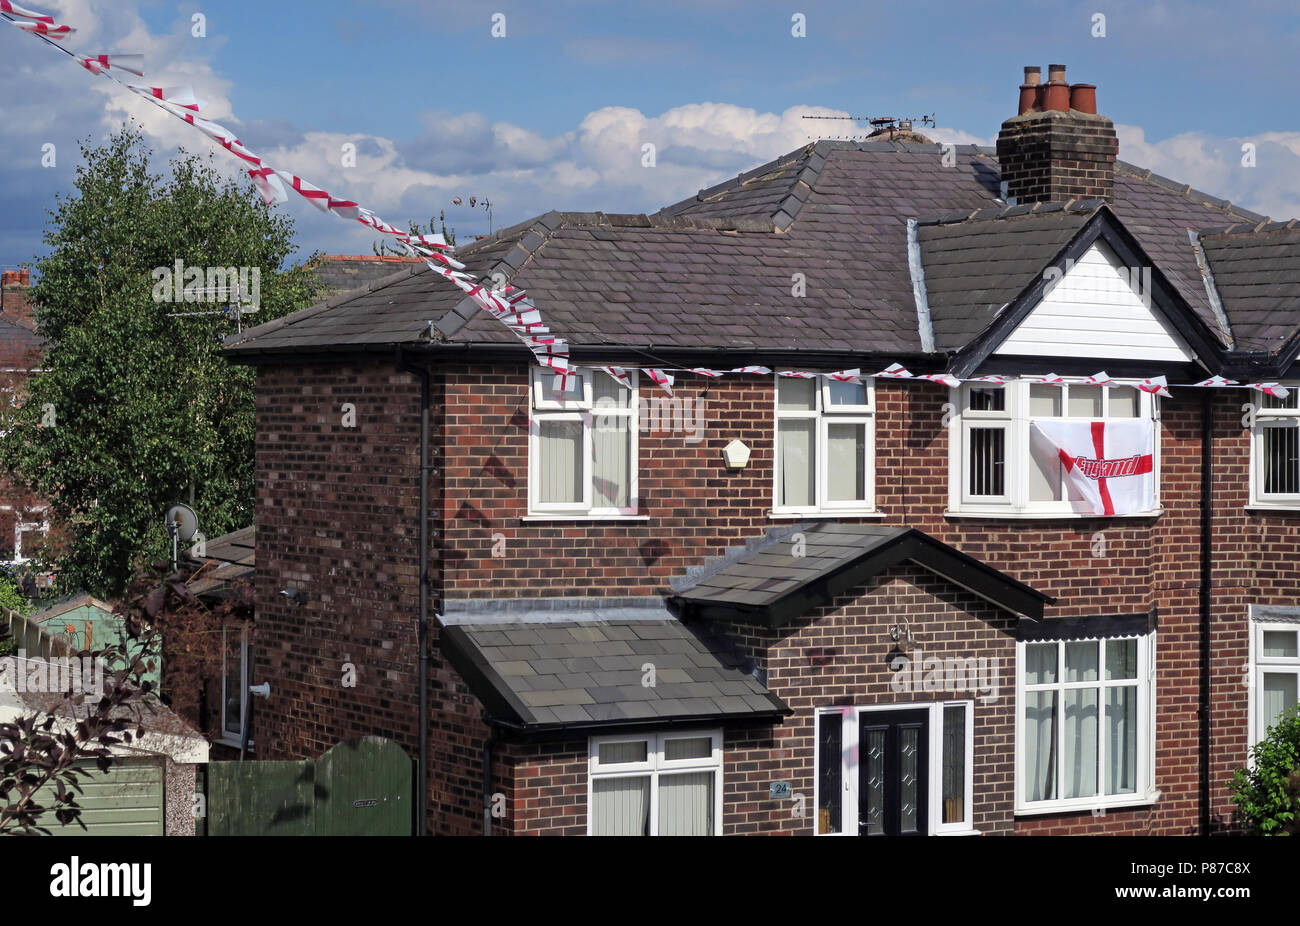 Croix de St George de pour des drapeaux blancs, volant dans une rue résidentielle, Grappenhall, Warrington, Cheshire, North West England, UK Banque D'Images